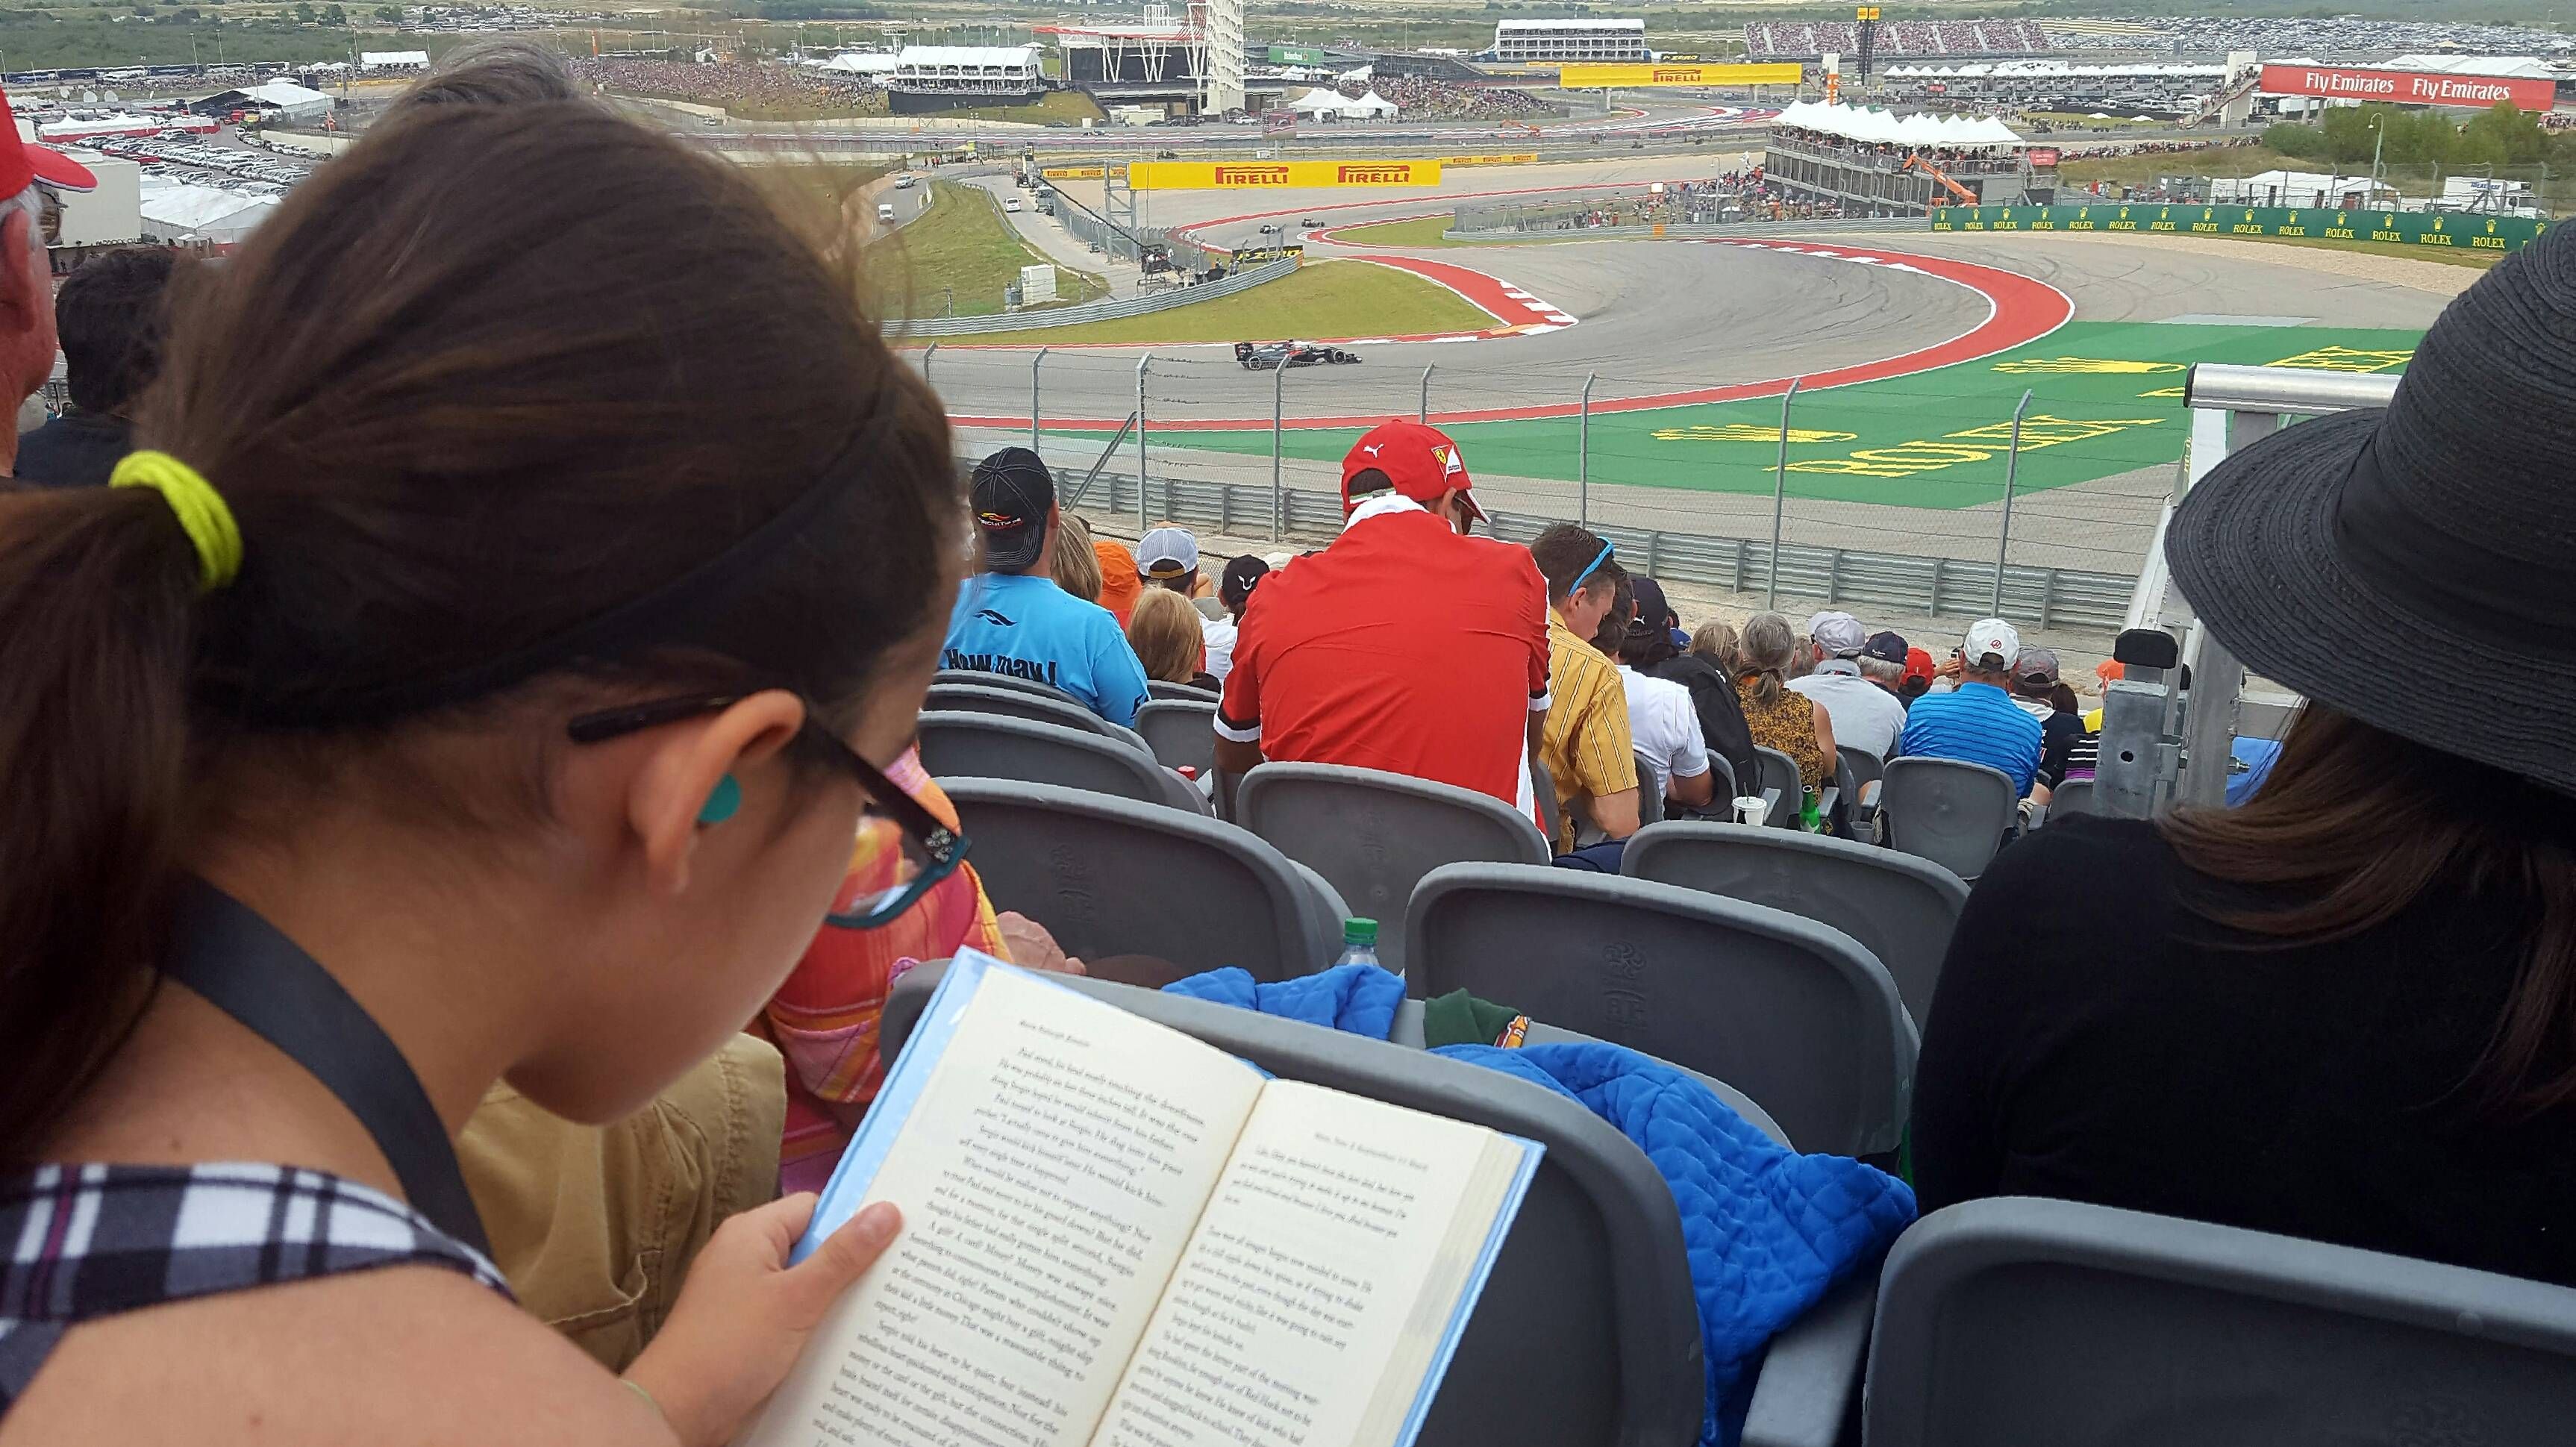 My daughter is a huge F1 fan